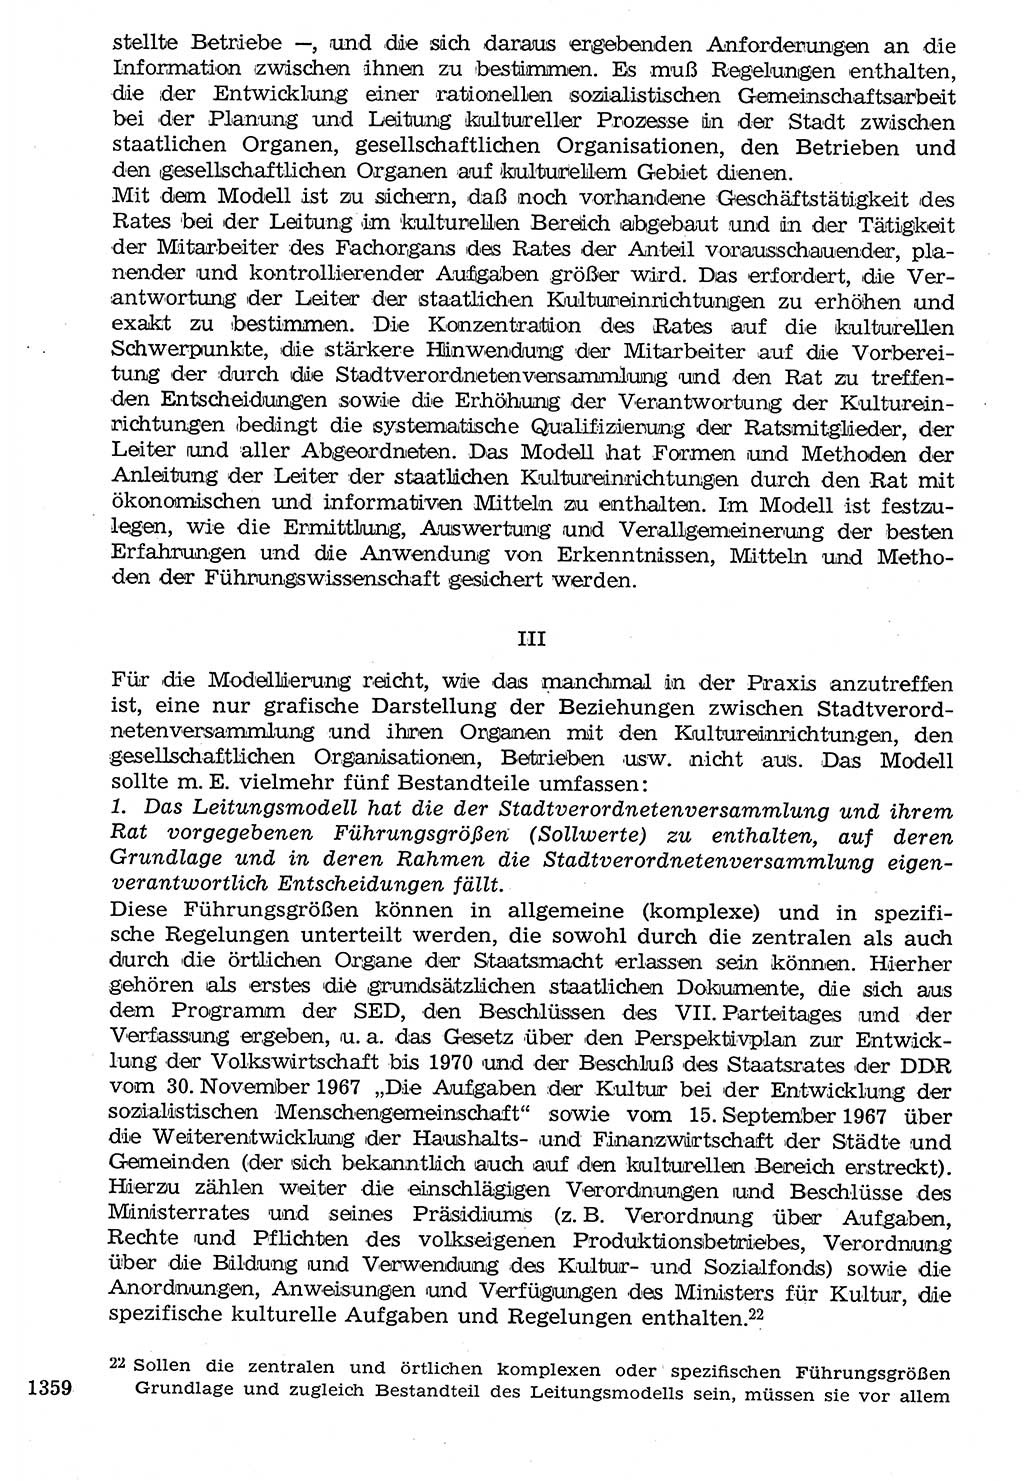 Staat und Recht (StuR), 17. Jahrgang [Deutsche Demokratische Republik (DDR)] 1968, Seite 1359 (StuR DDR 1968, S. 1359)